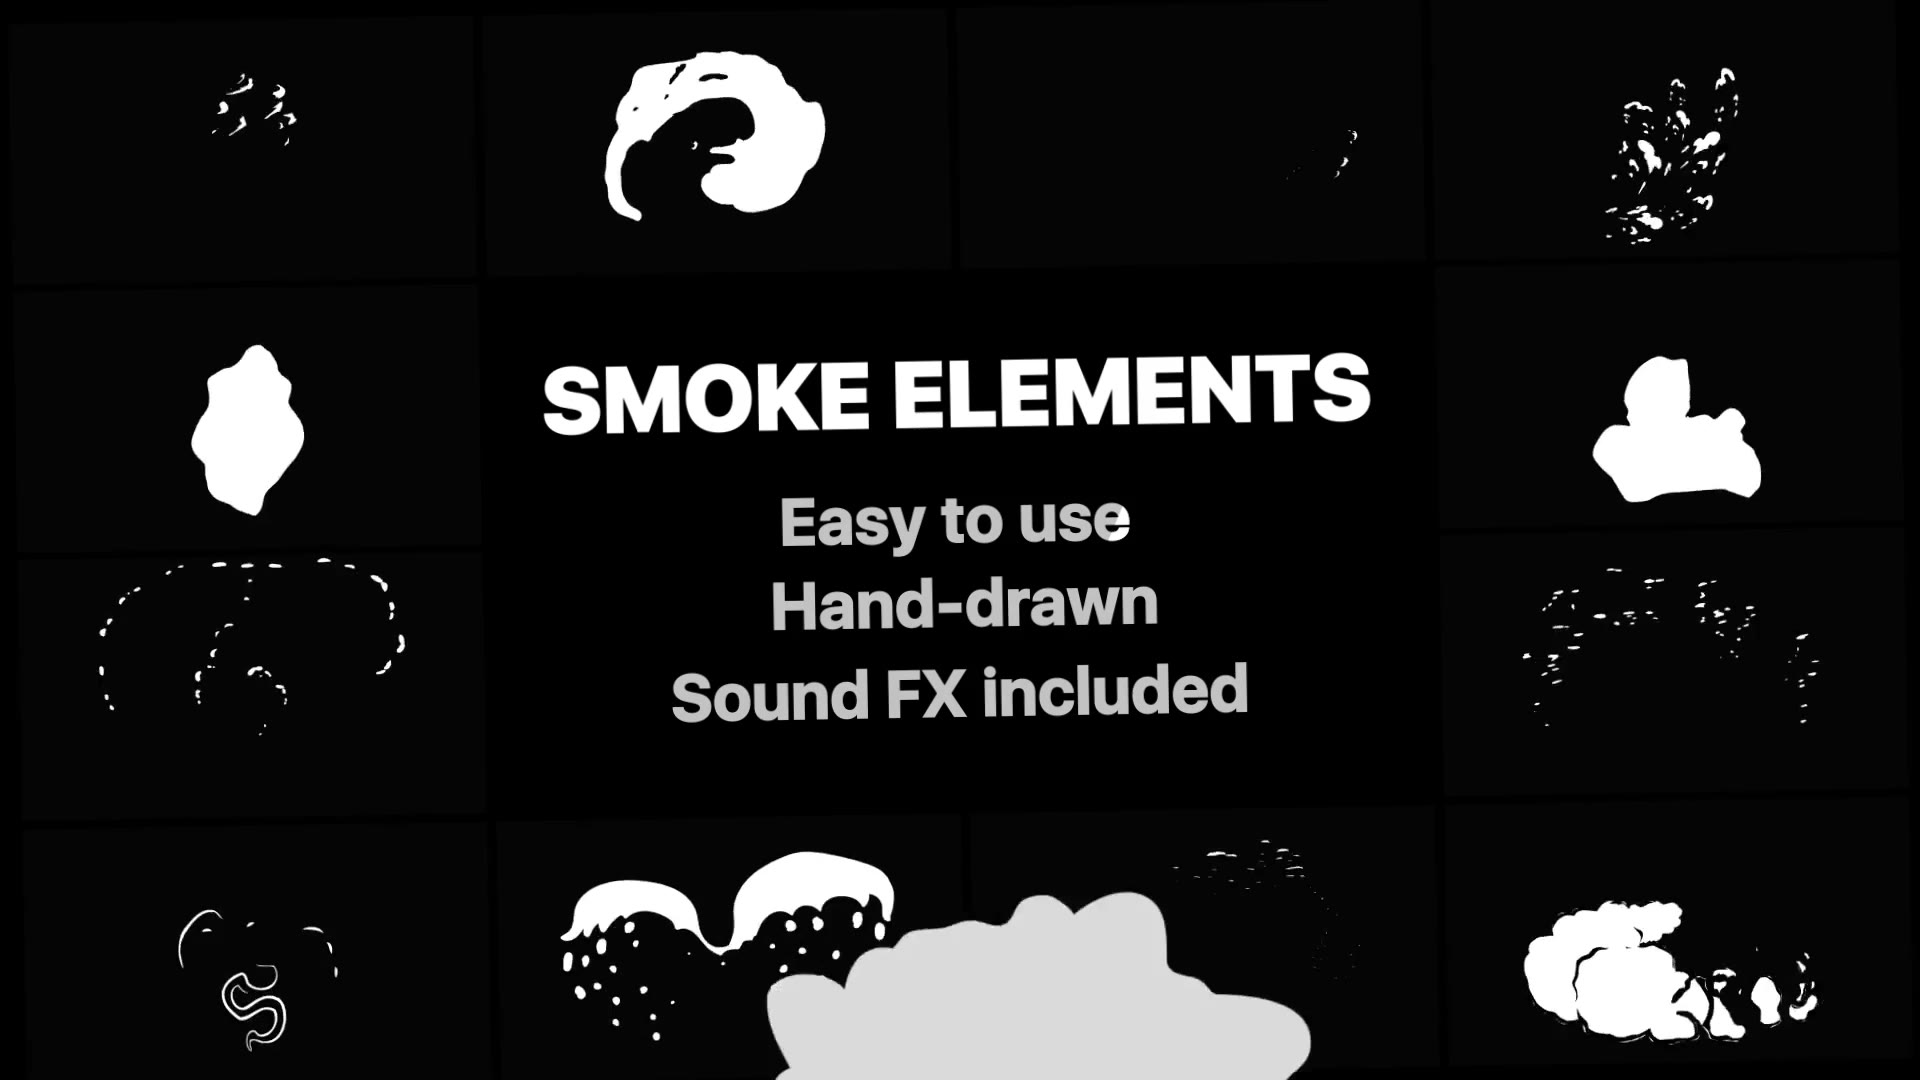 2DFX Smoke Elements - Download Videohive 22721115